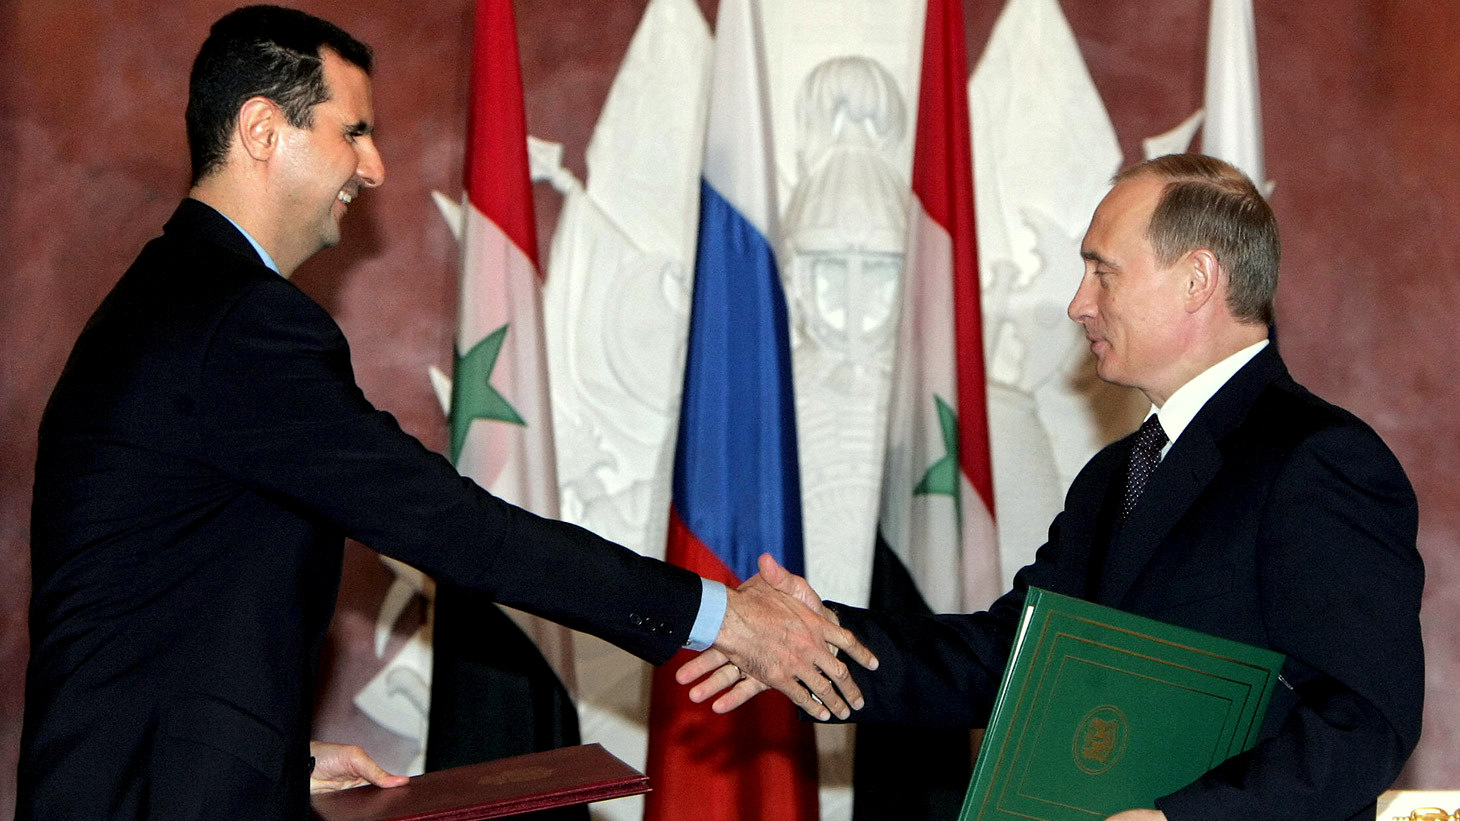 Il Presidente siriano Assad e il Presidente russo Putin. Credit to: Sergei Chirikov